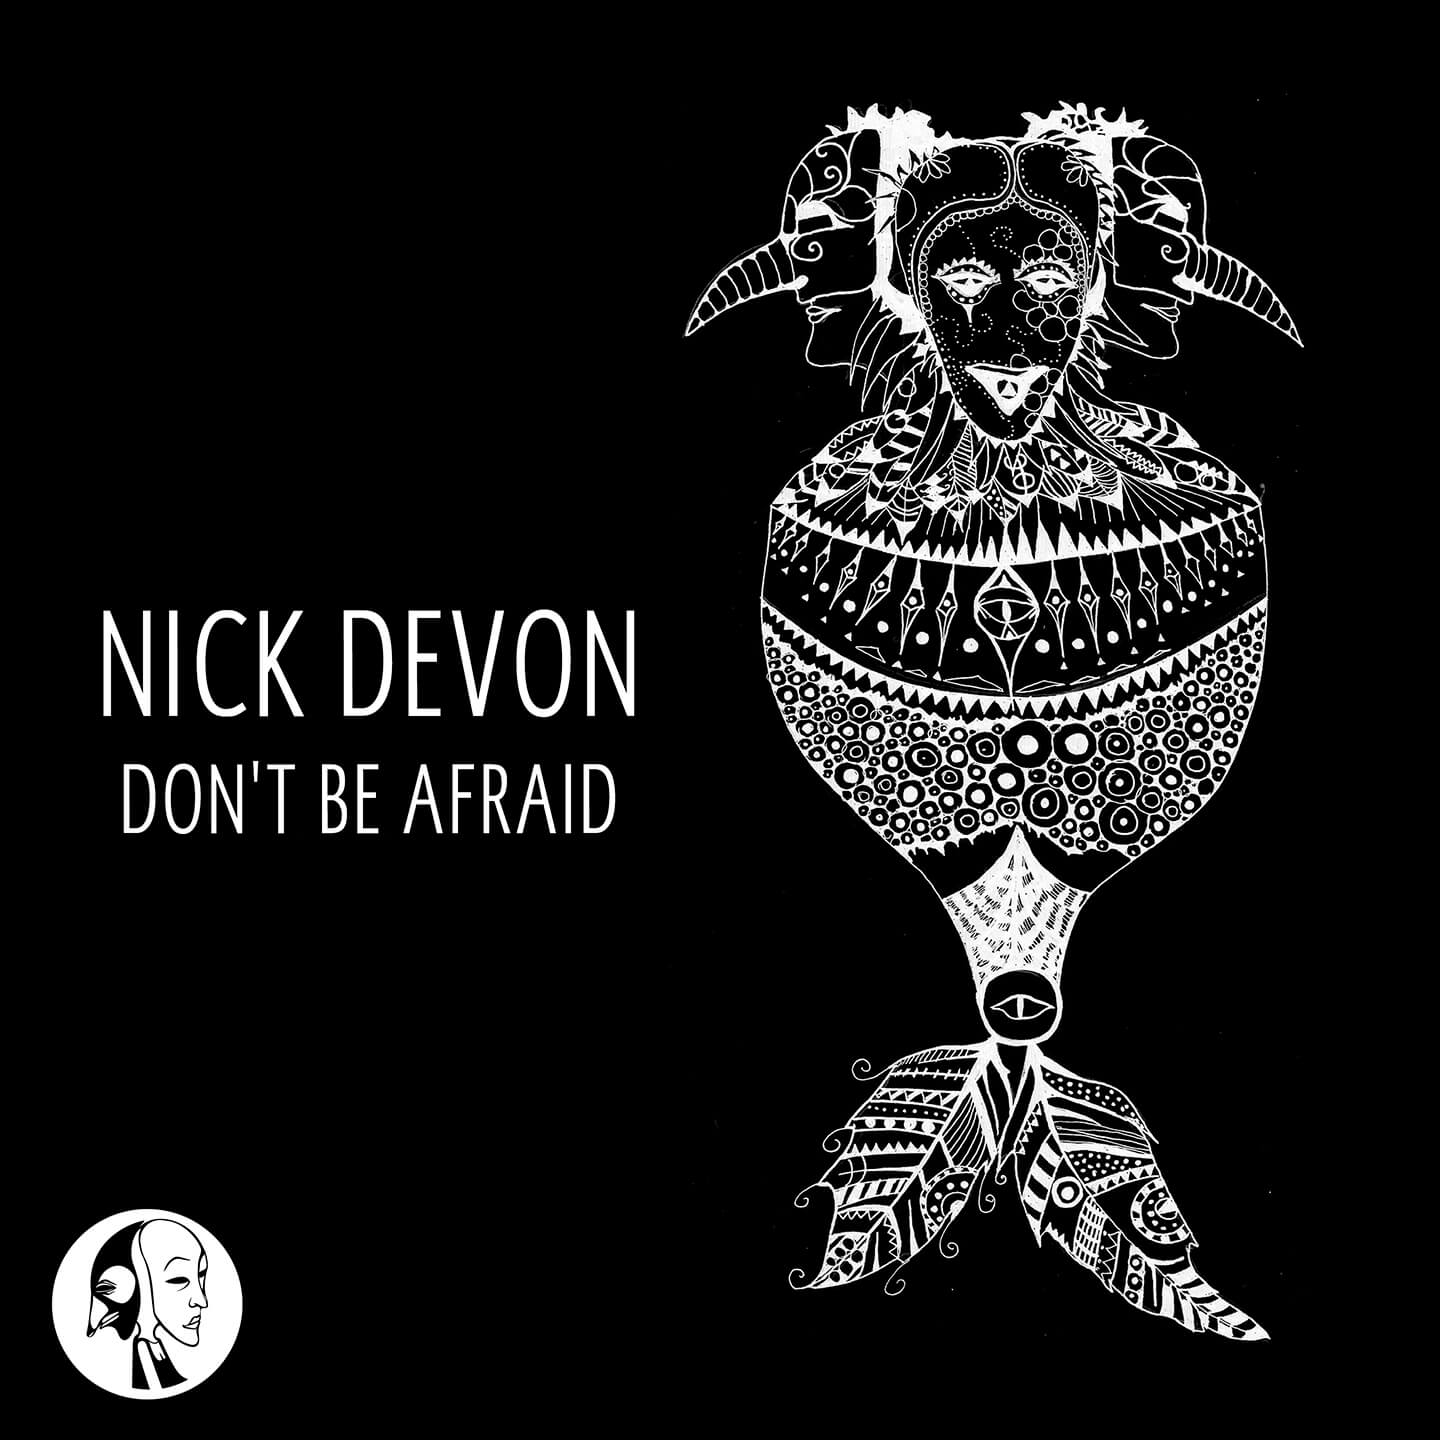 SYYKBLK003 - Steyoyoke Black - Nick Devon - Don't Be Afraid